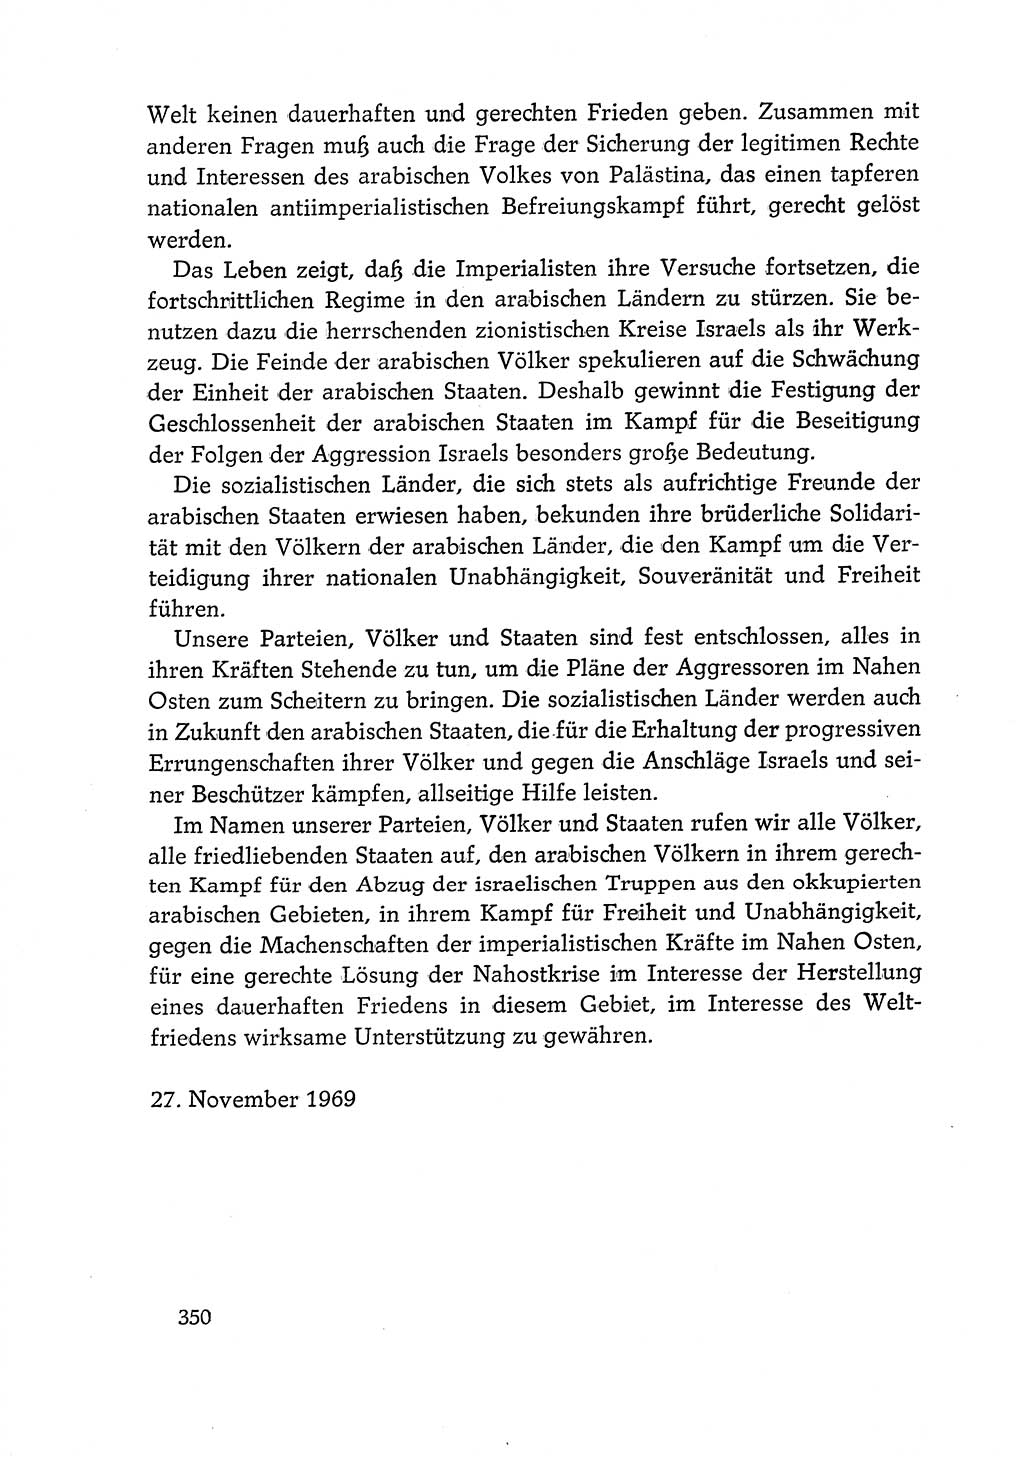 Dokumente der Sozialistischen Einheitspartei Deutschlands (SED) [Deutsche Demokratische Republik (DDR)] 1968-1969, Seite 350 (Dok. SED DDR 1968-1969, S. 350)